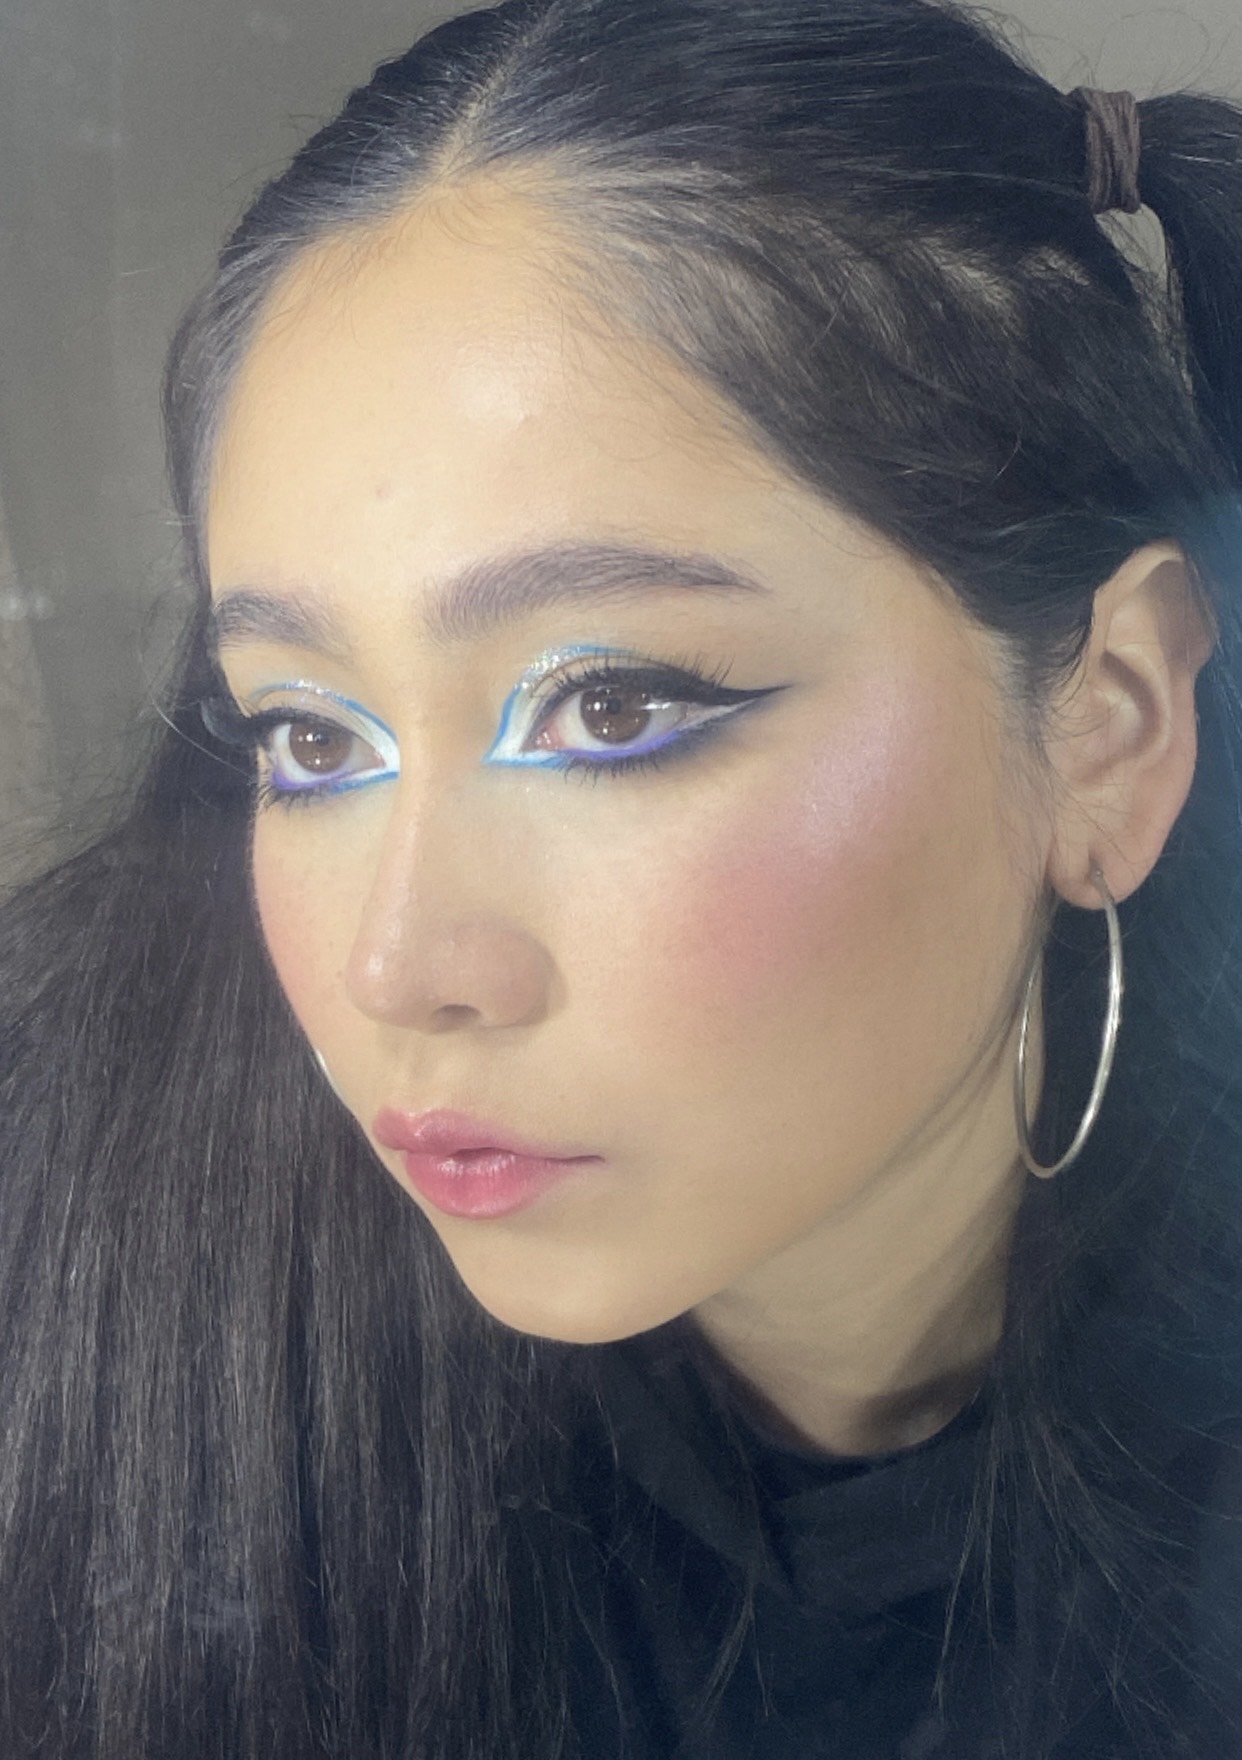 #JóvenesTalentos Kaori Miura, una maquilladora que debes conocer